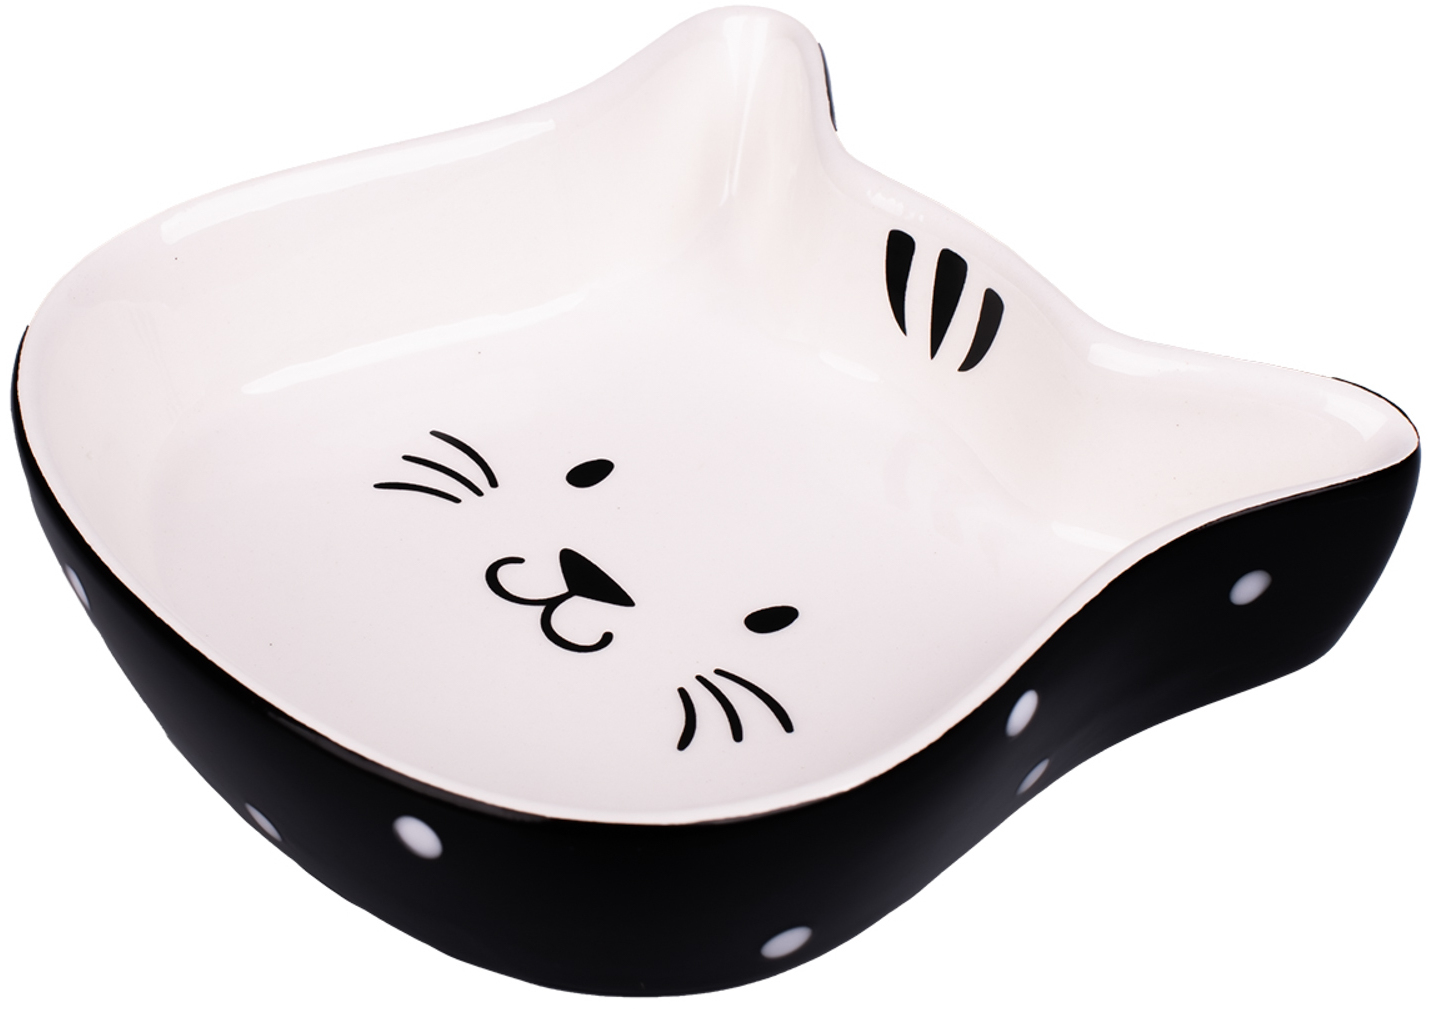 КерамикАрт миска керамическая для кошек Мордочка кошки 200 мл, черный с белым